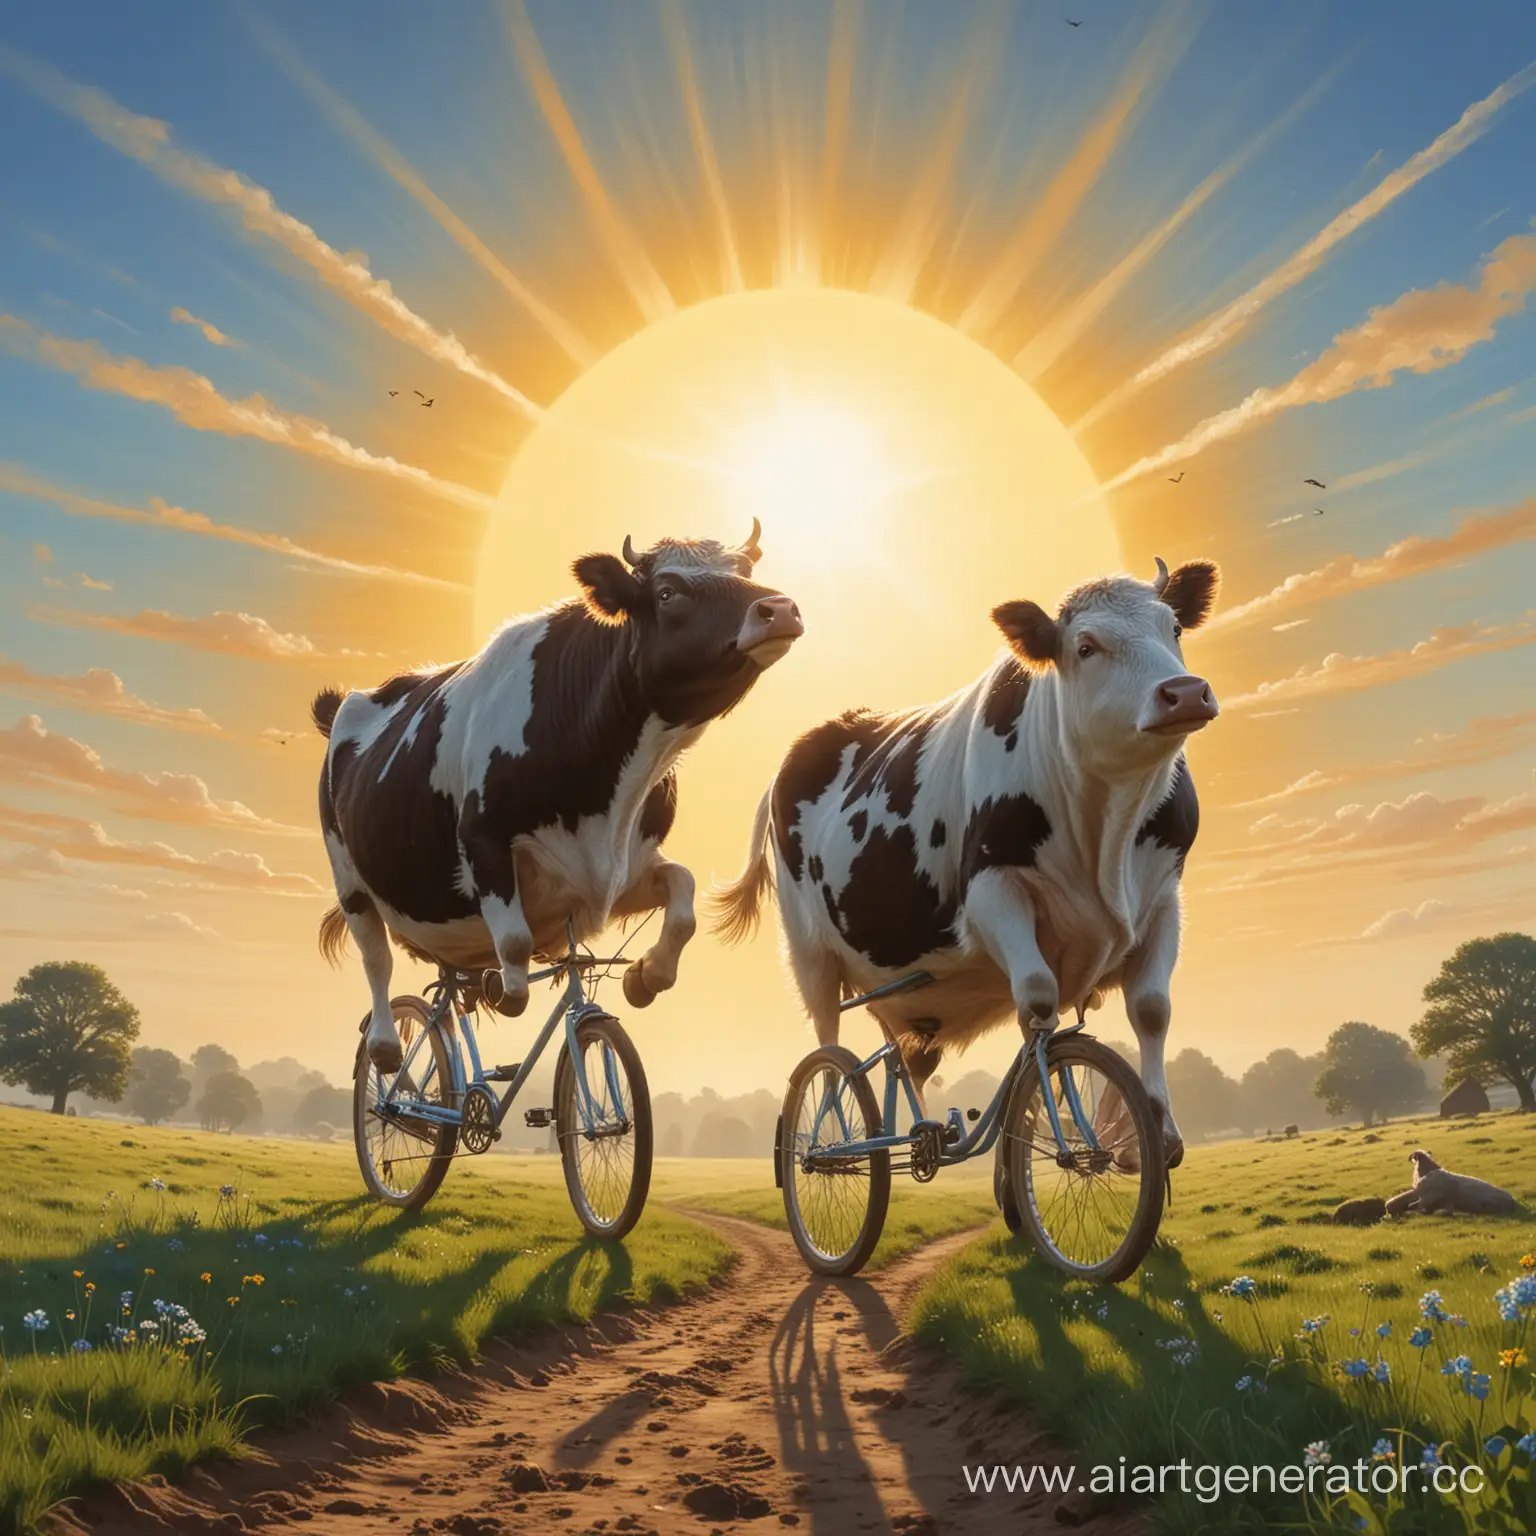 Летят две коровы к солнцу, одна синяя другая на юг, сколько лет ежику если я на велосипеде?